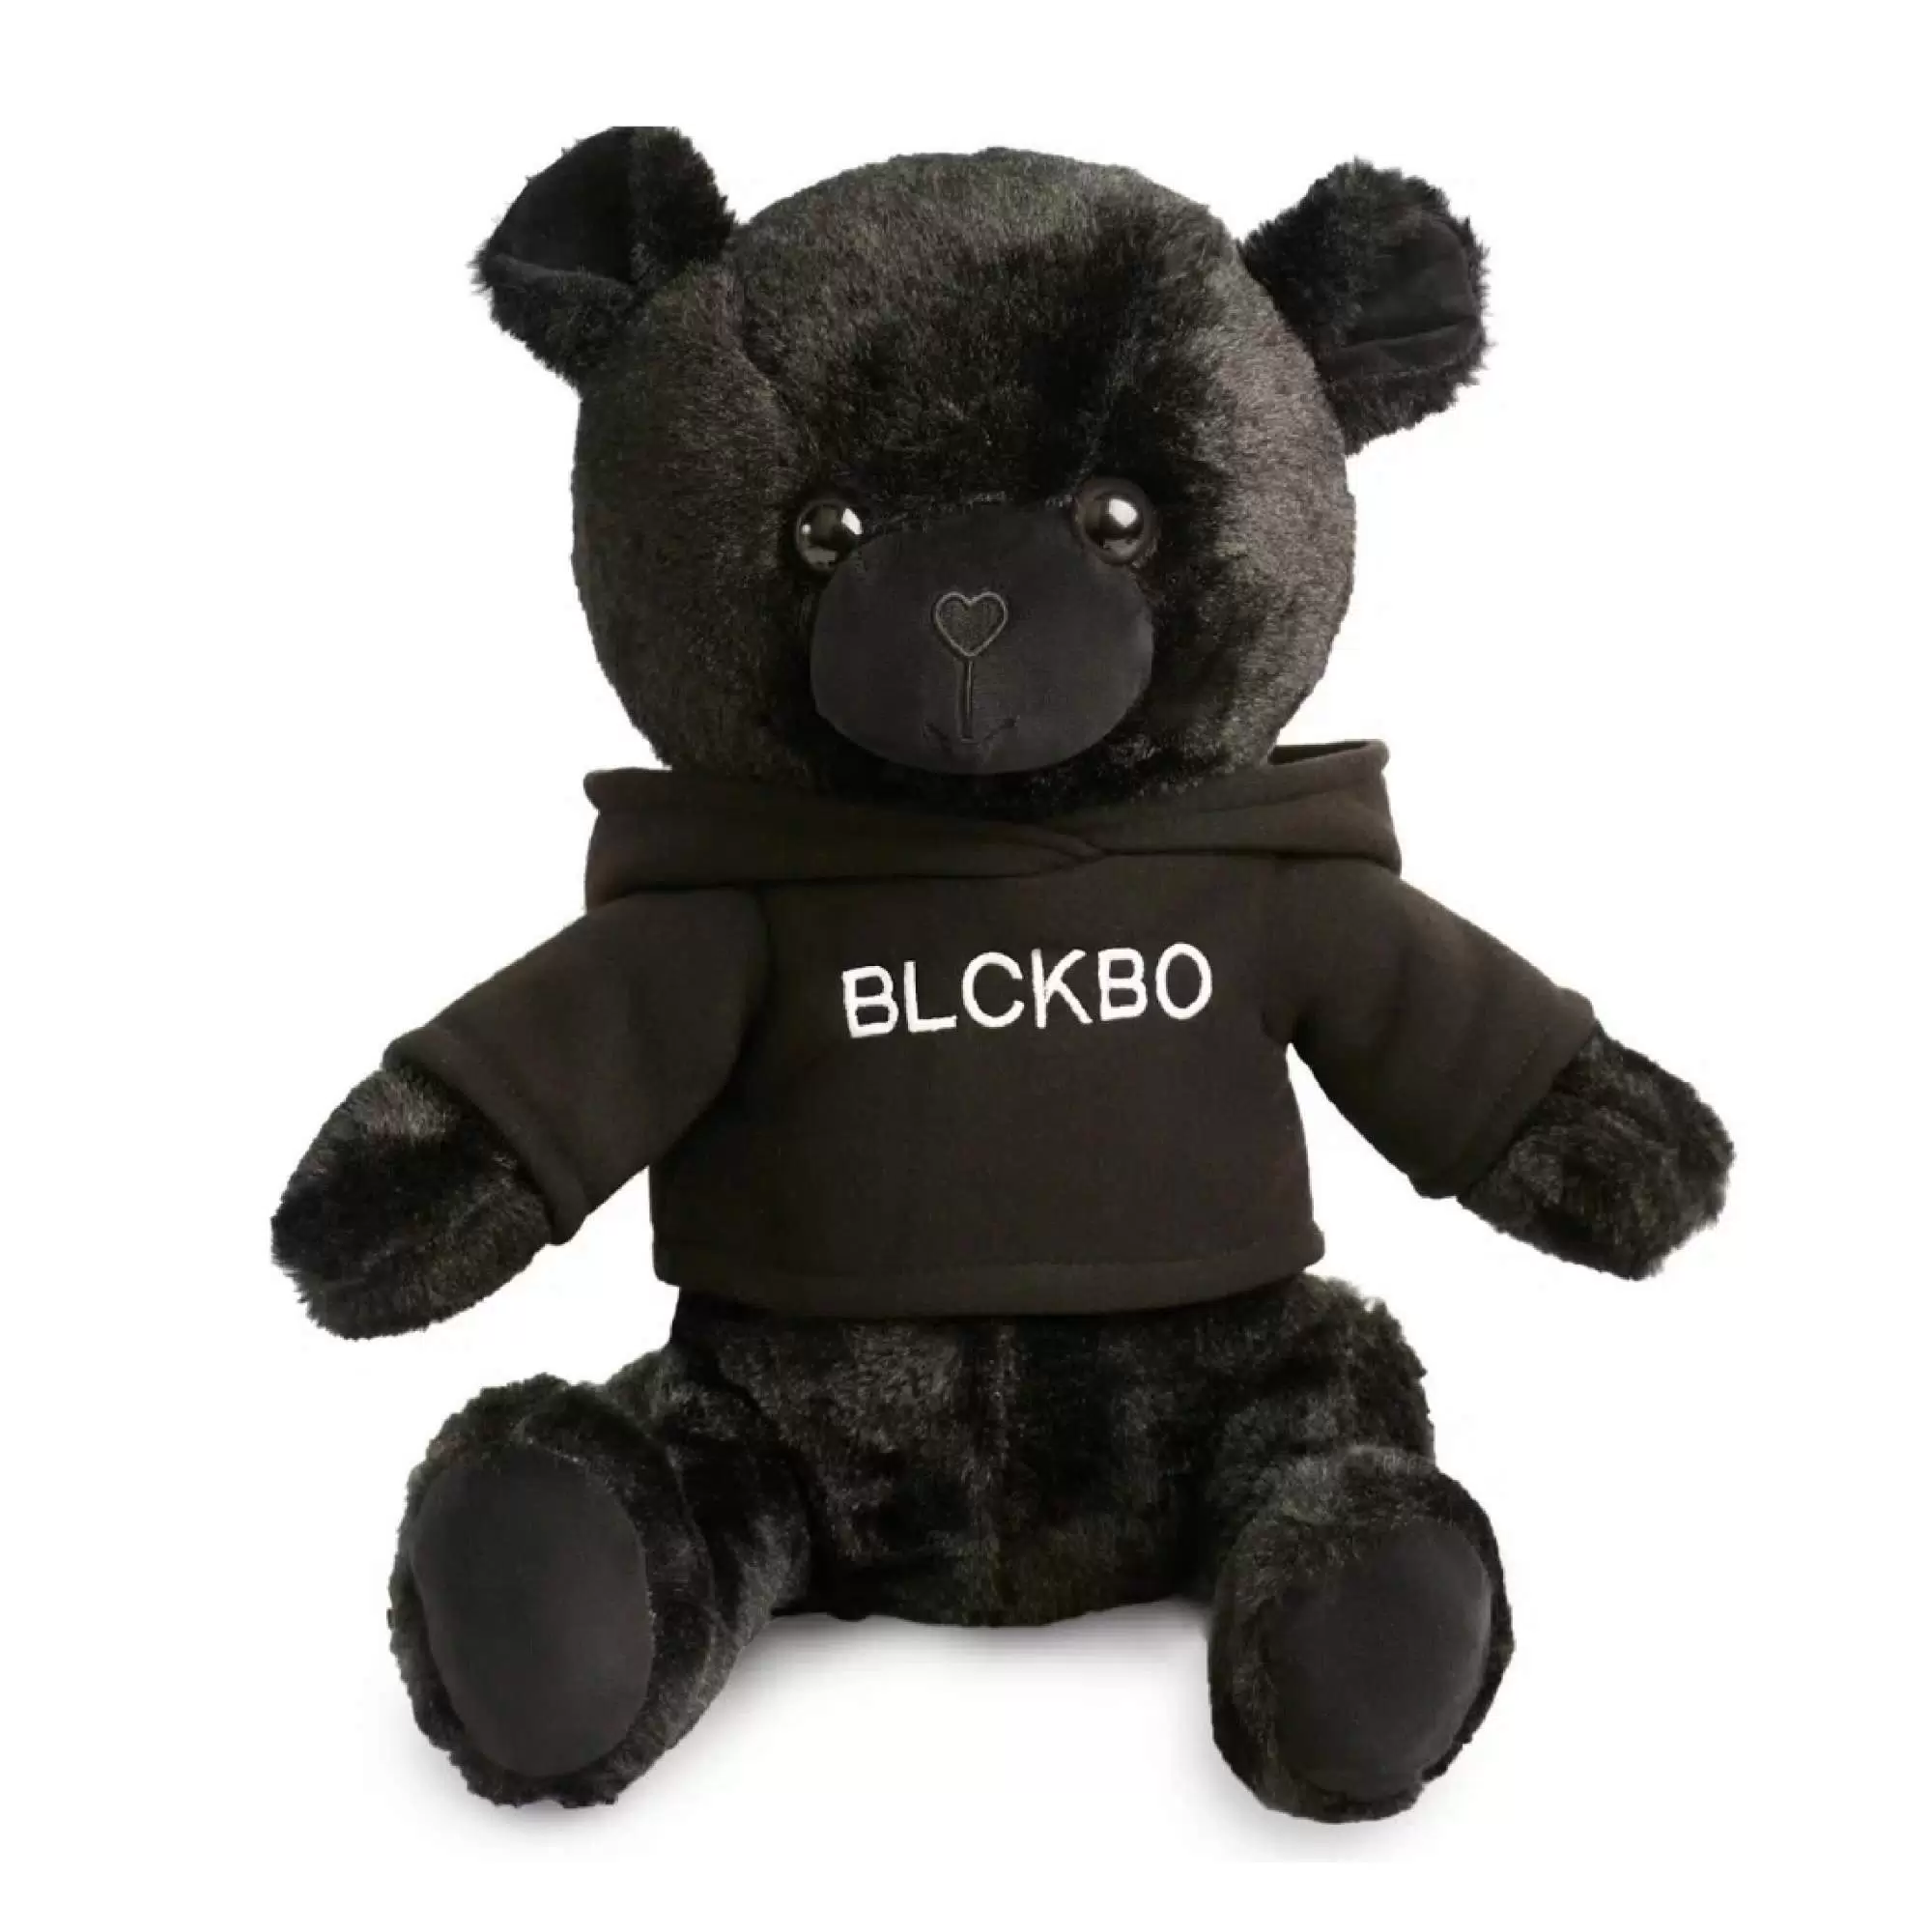 Мягкая игрушка Черный Медведь Блэкбо, blckbo медведь, одет в худи, 25 см